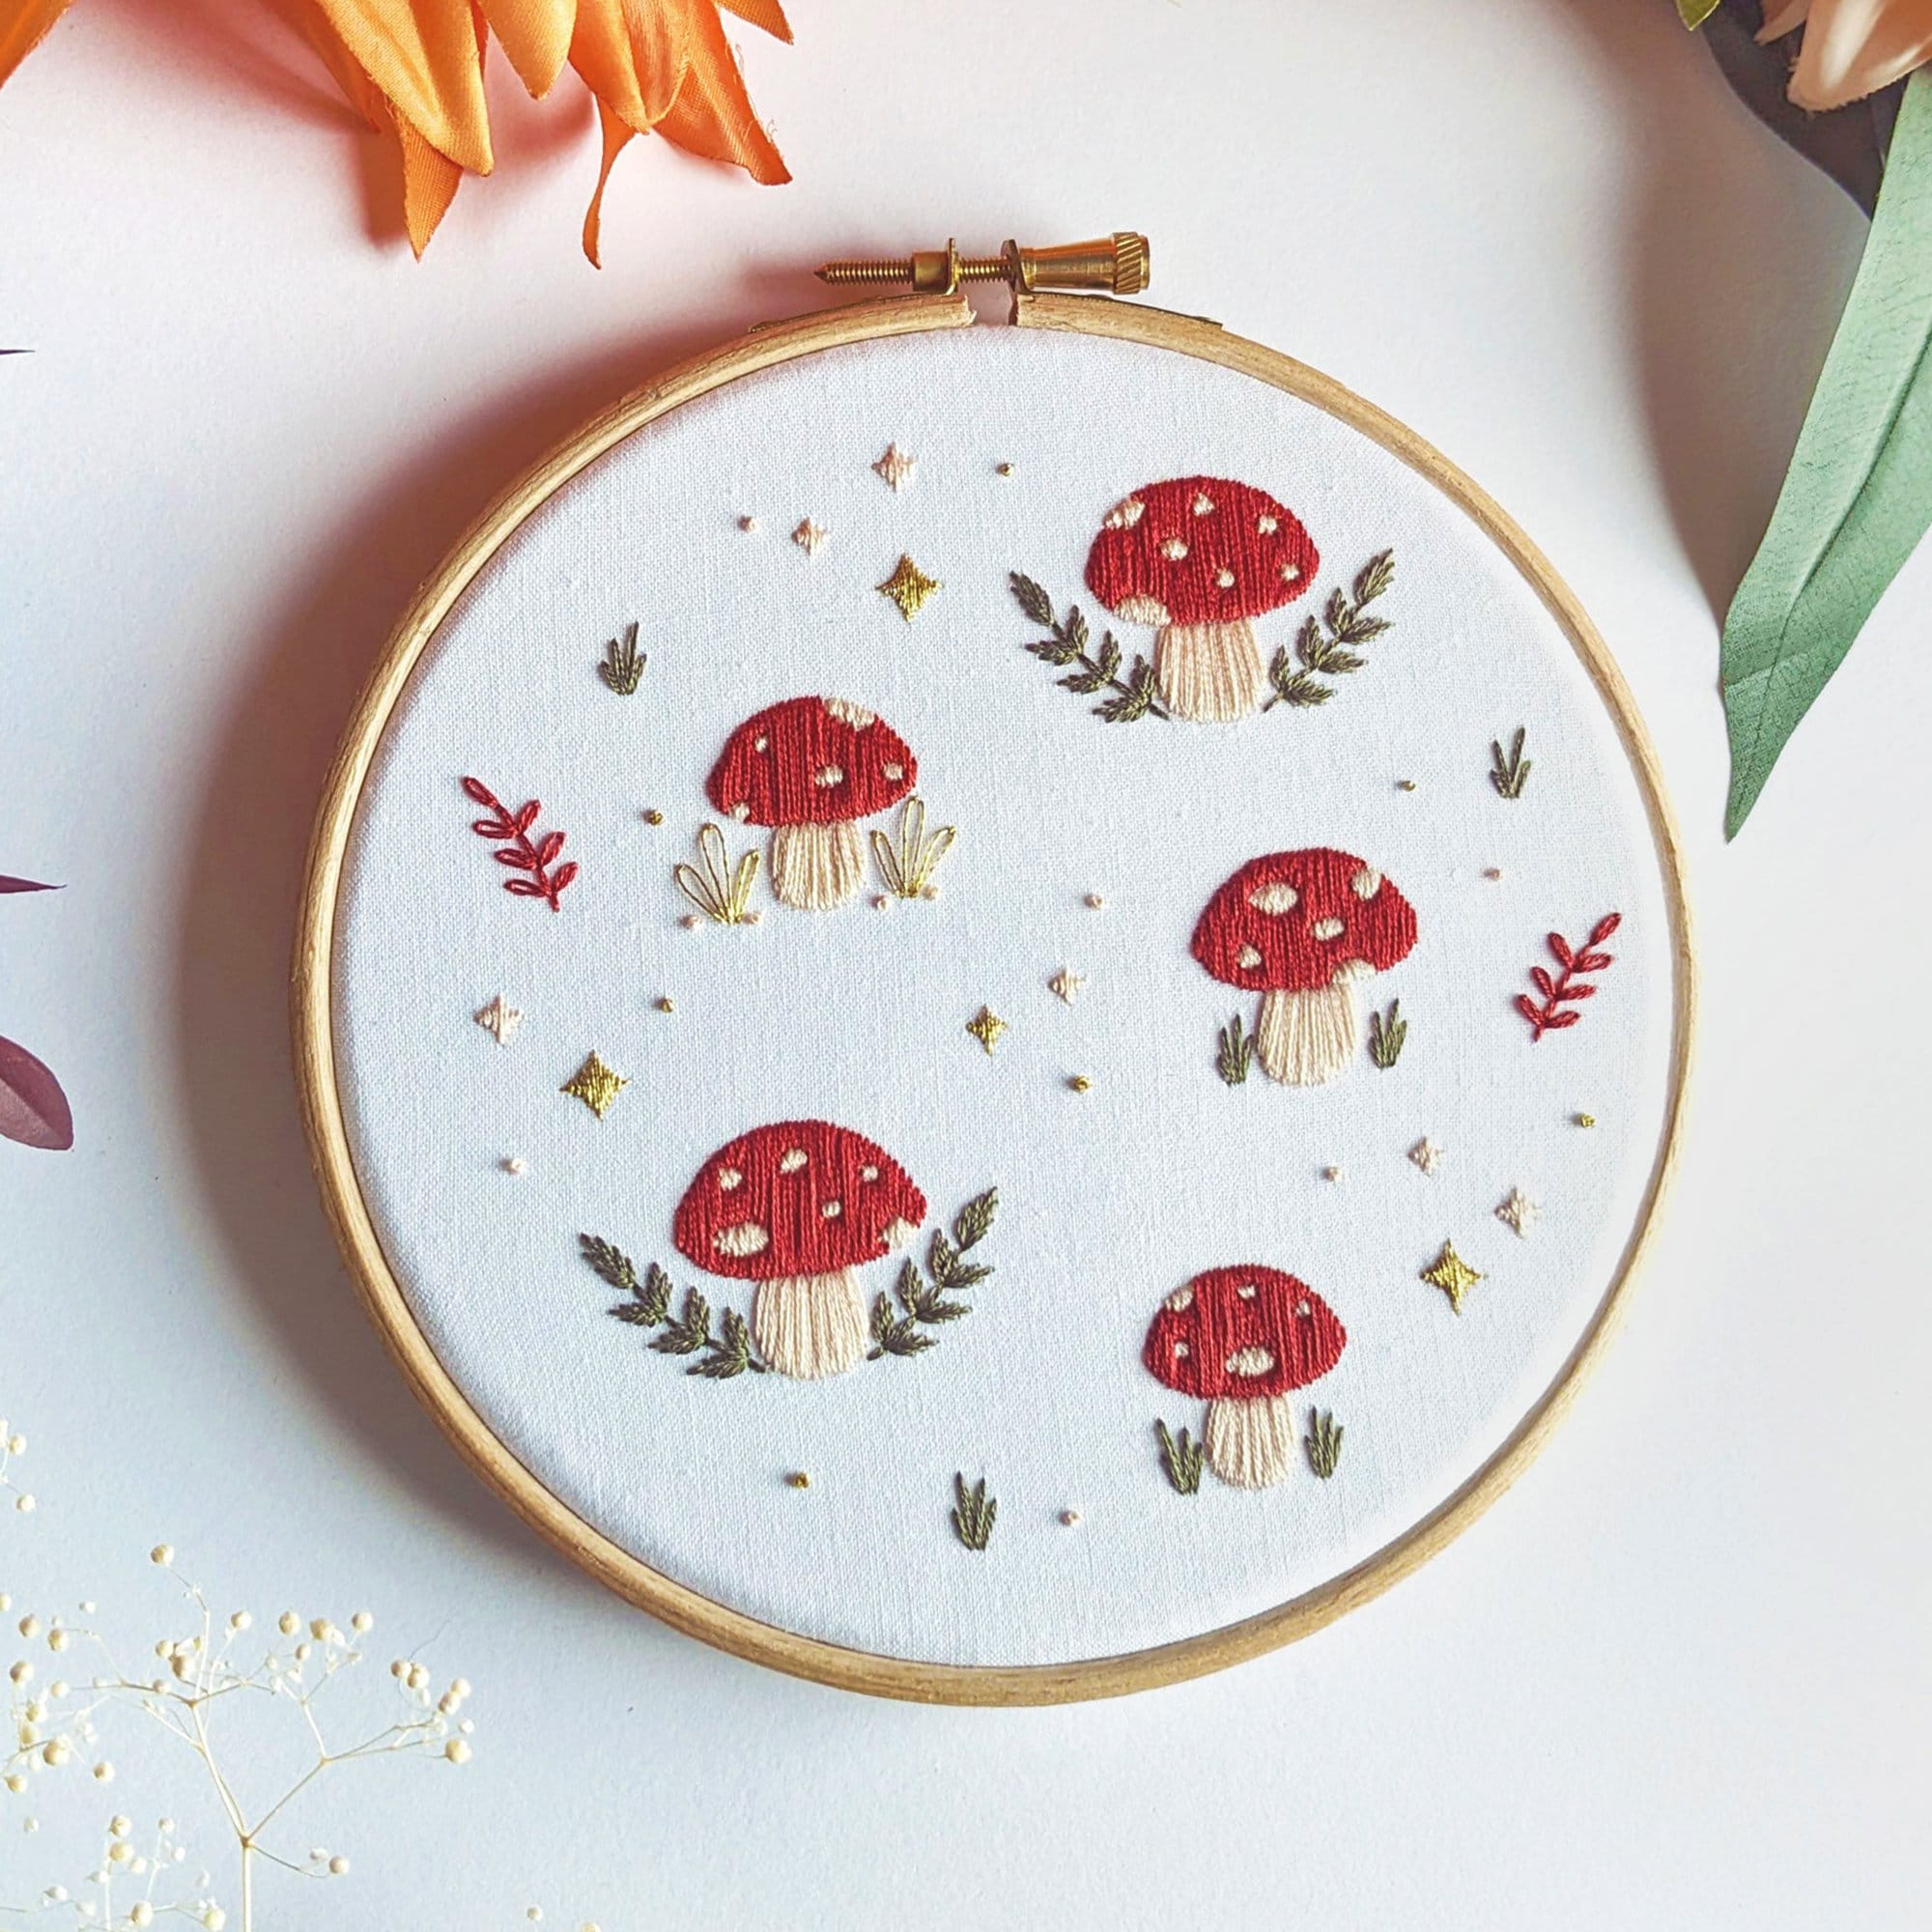 Mushroom - 4 inch Embroidery Hoop